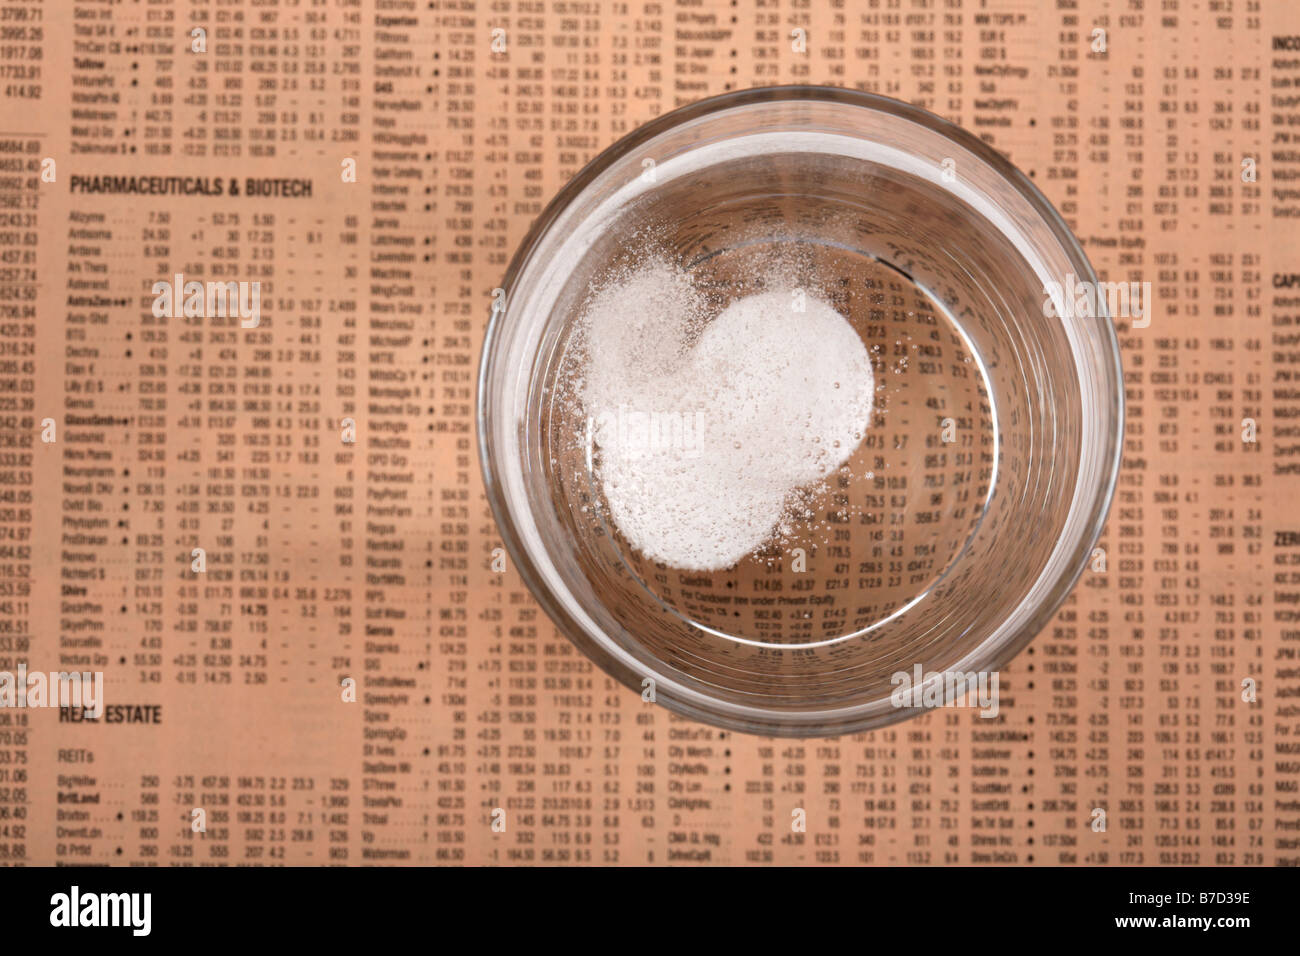 Deux comprimés d'aspirine paracétamol soluble dans un verre d'eau sur un exemplaire du Financial Times Banque D'Images